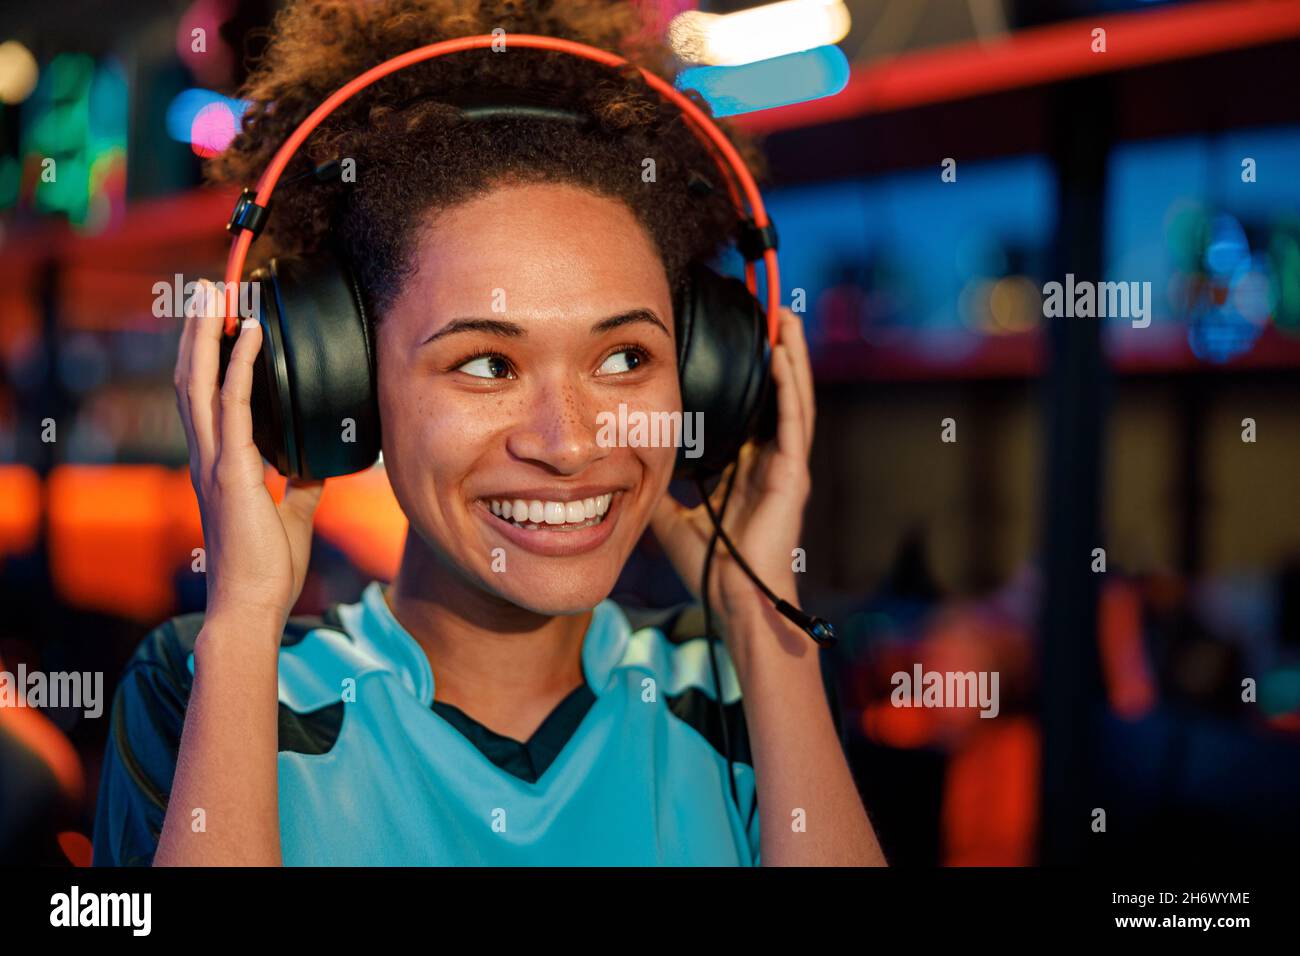 Une femme jouant de bonne humeur après un tournoi dans un club de jeu Banque D'Images